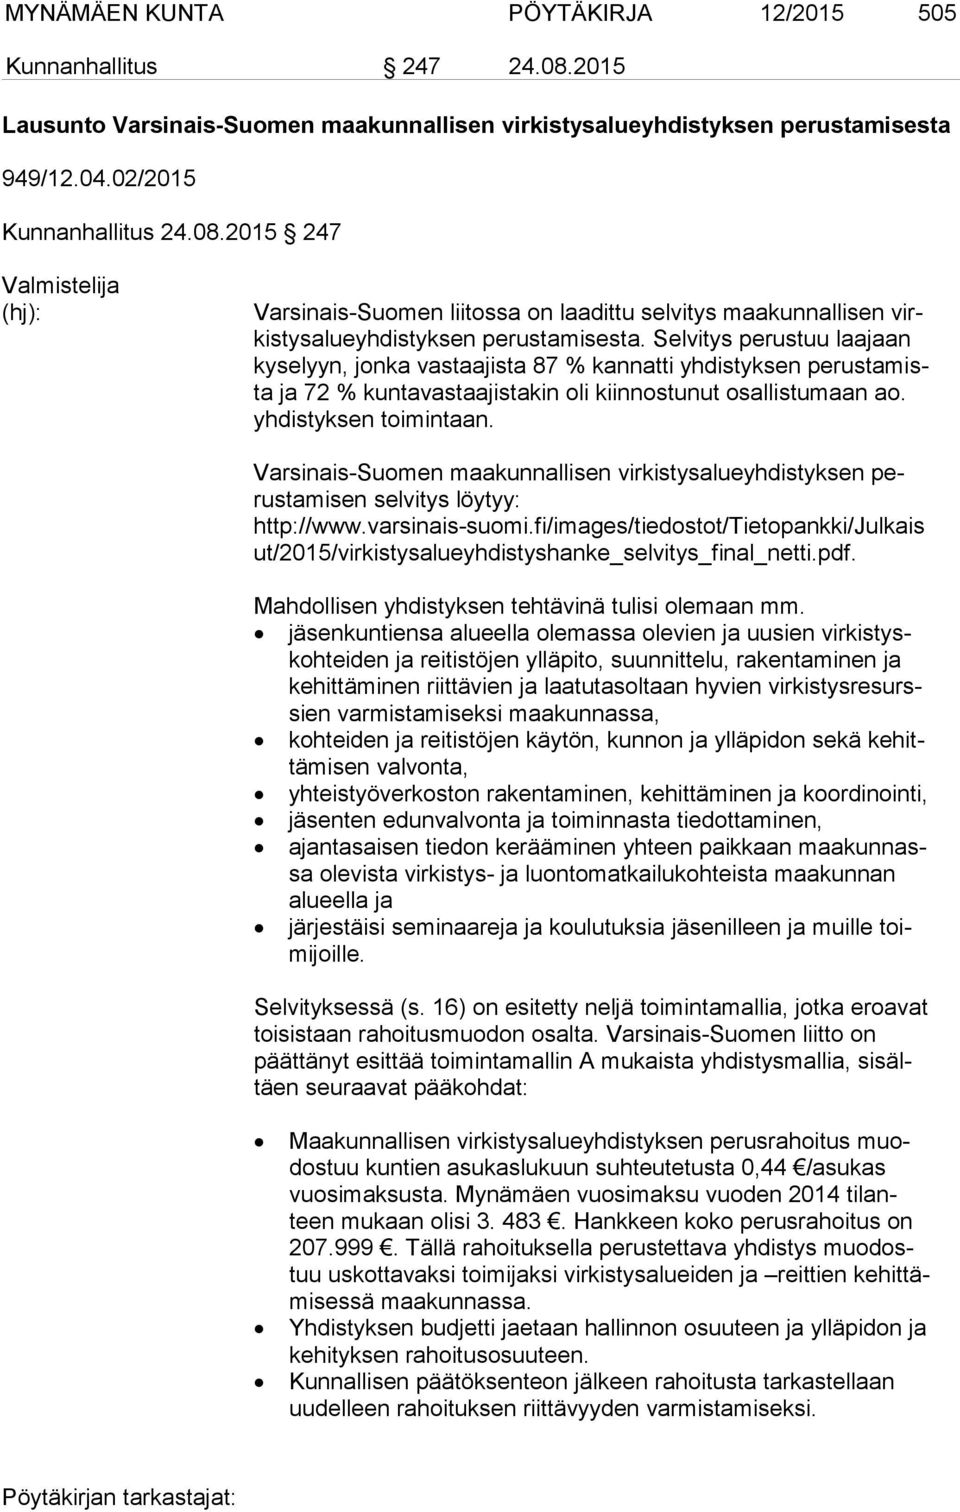 Varsinais-Suomen maakunnallisen virkistysalueyhdistyksen perus ta mi sen selvitys löytyy: http://www.varsinais-suomi.